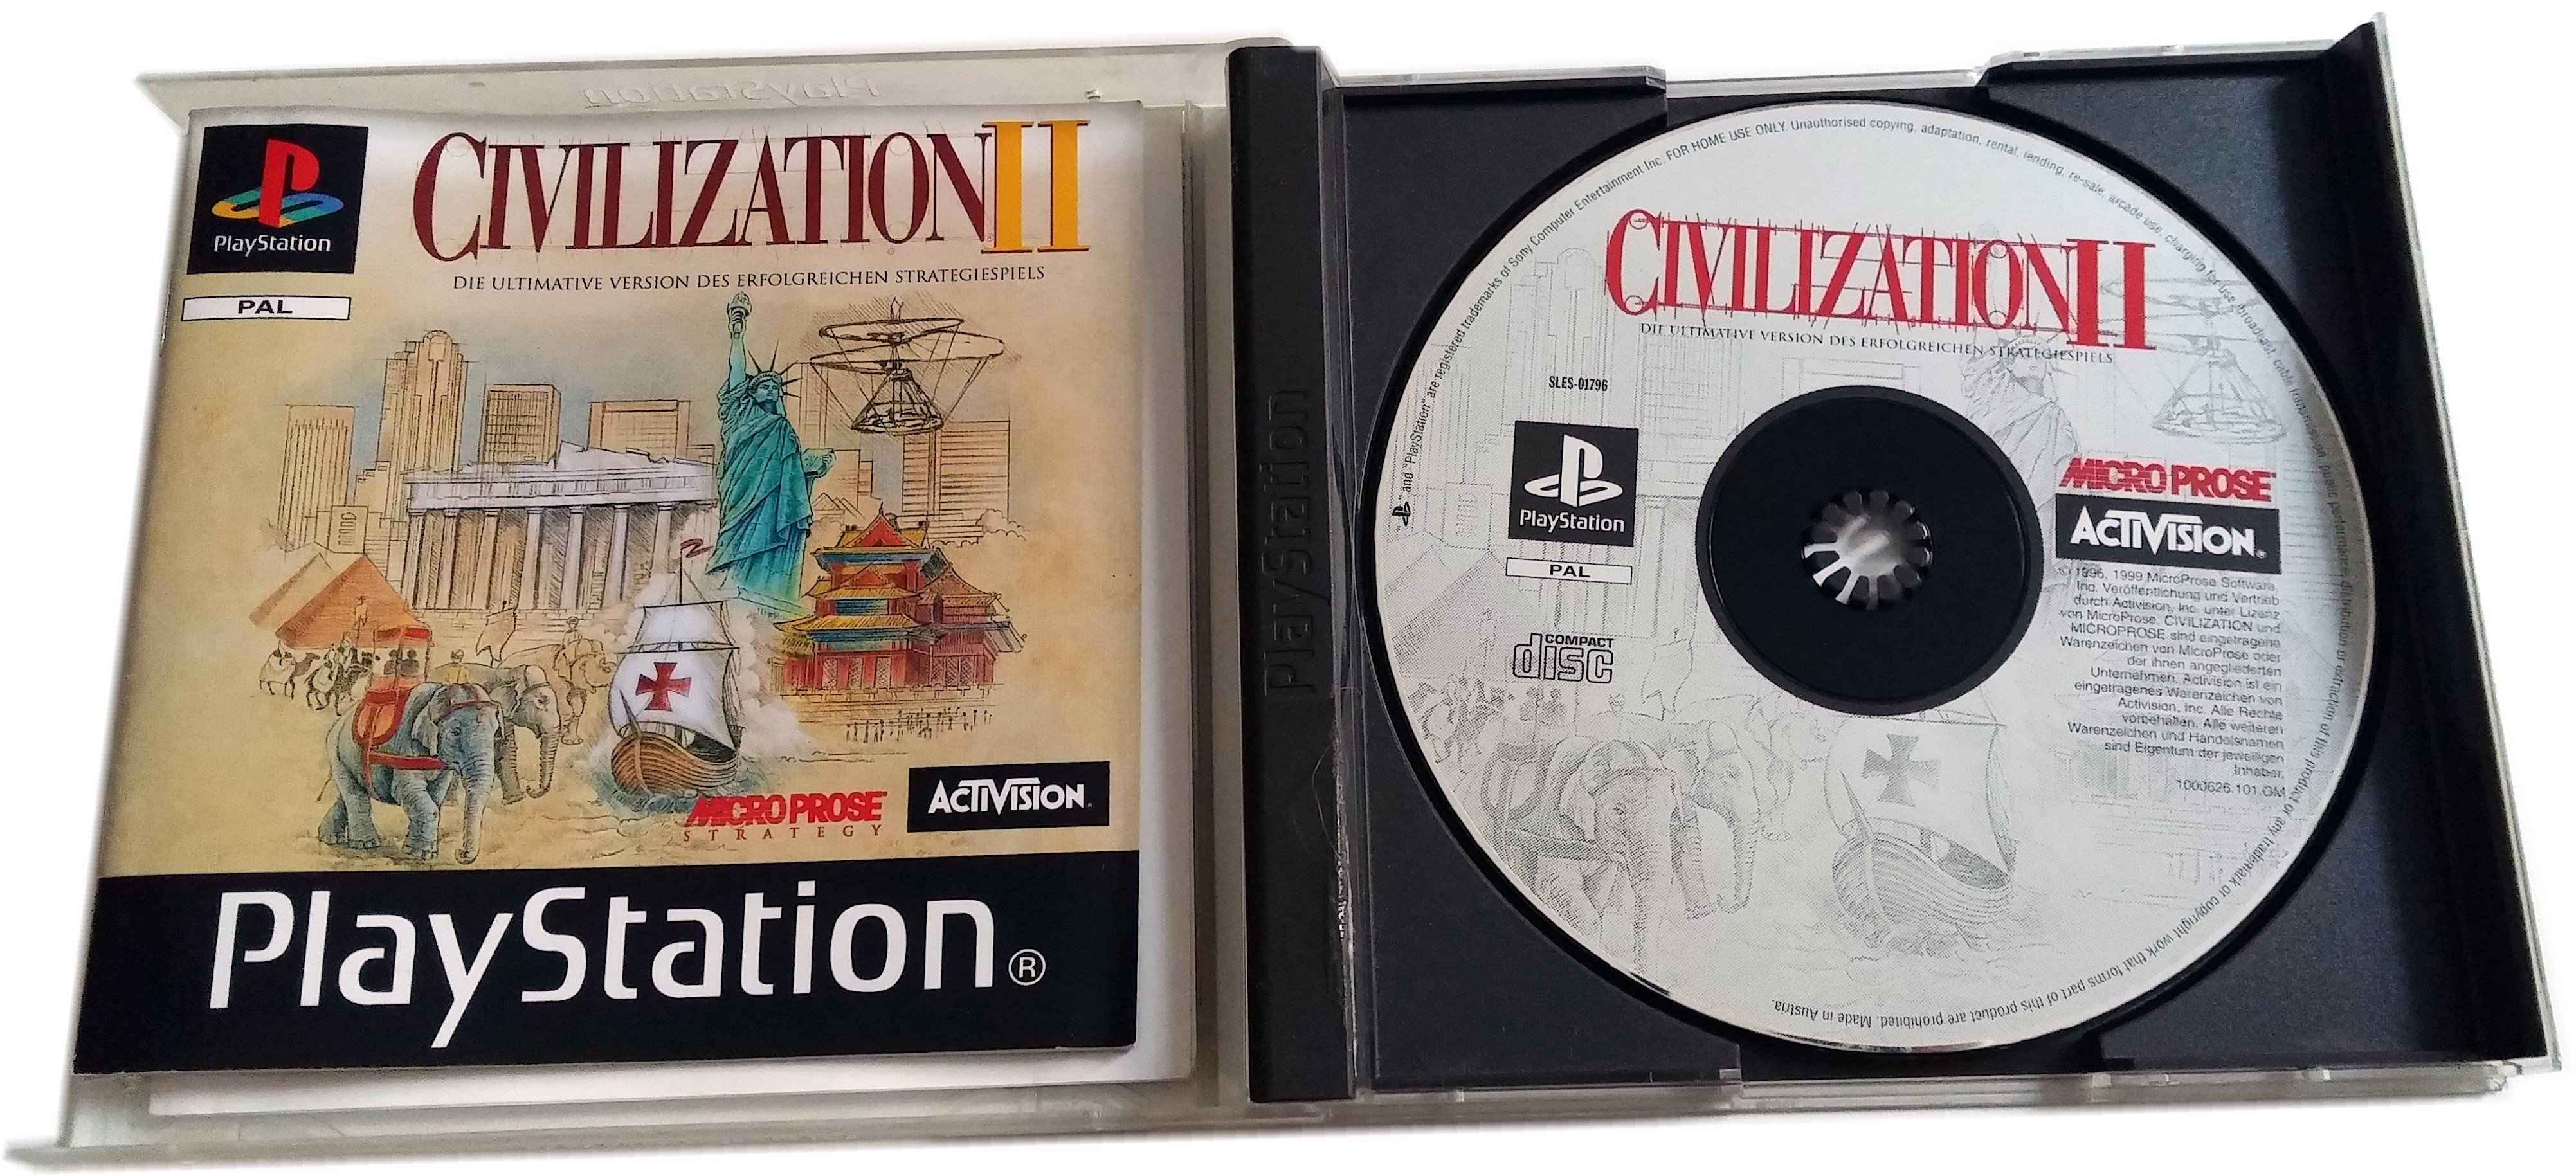 psx civilization ii